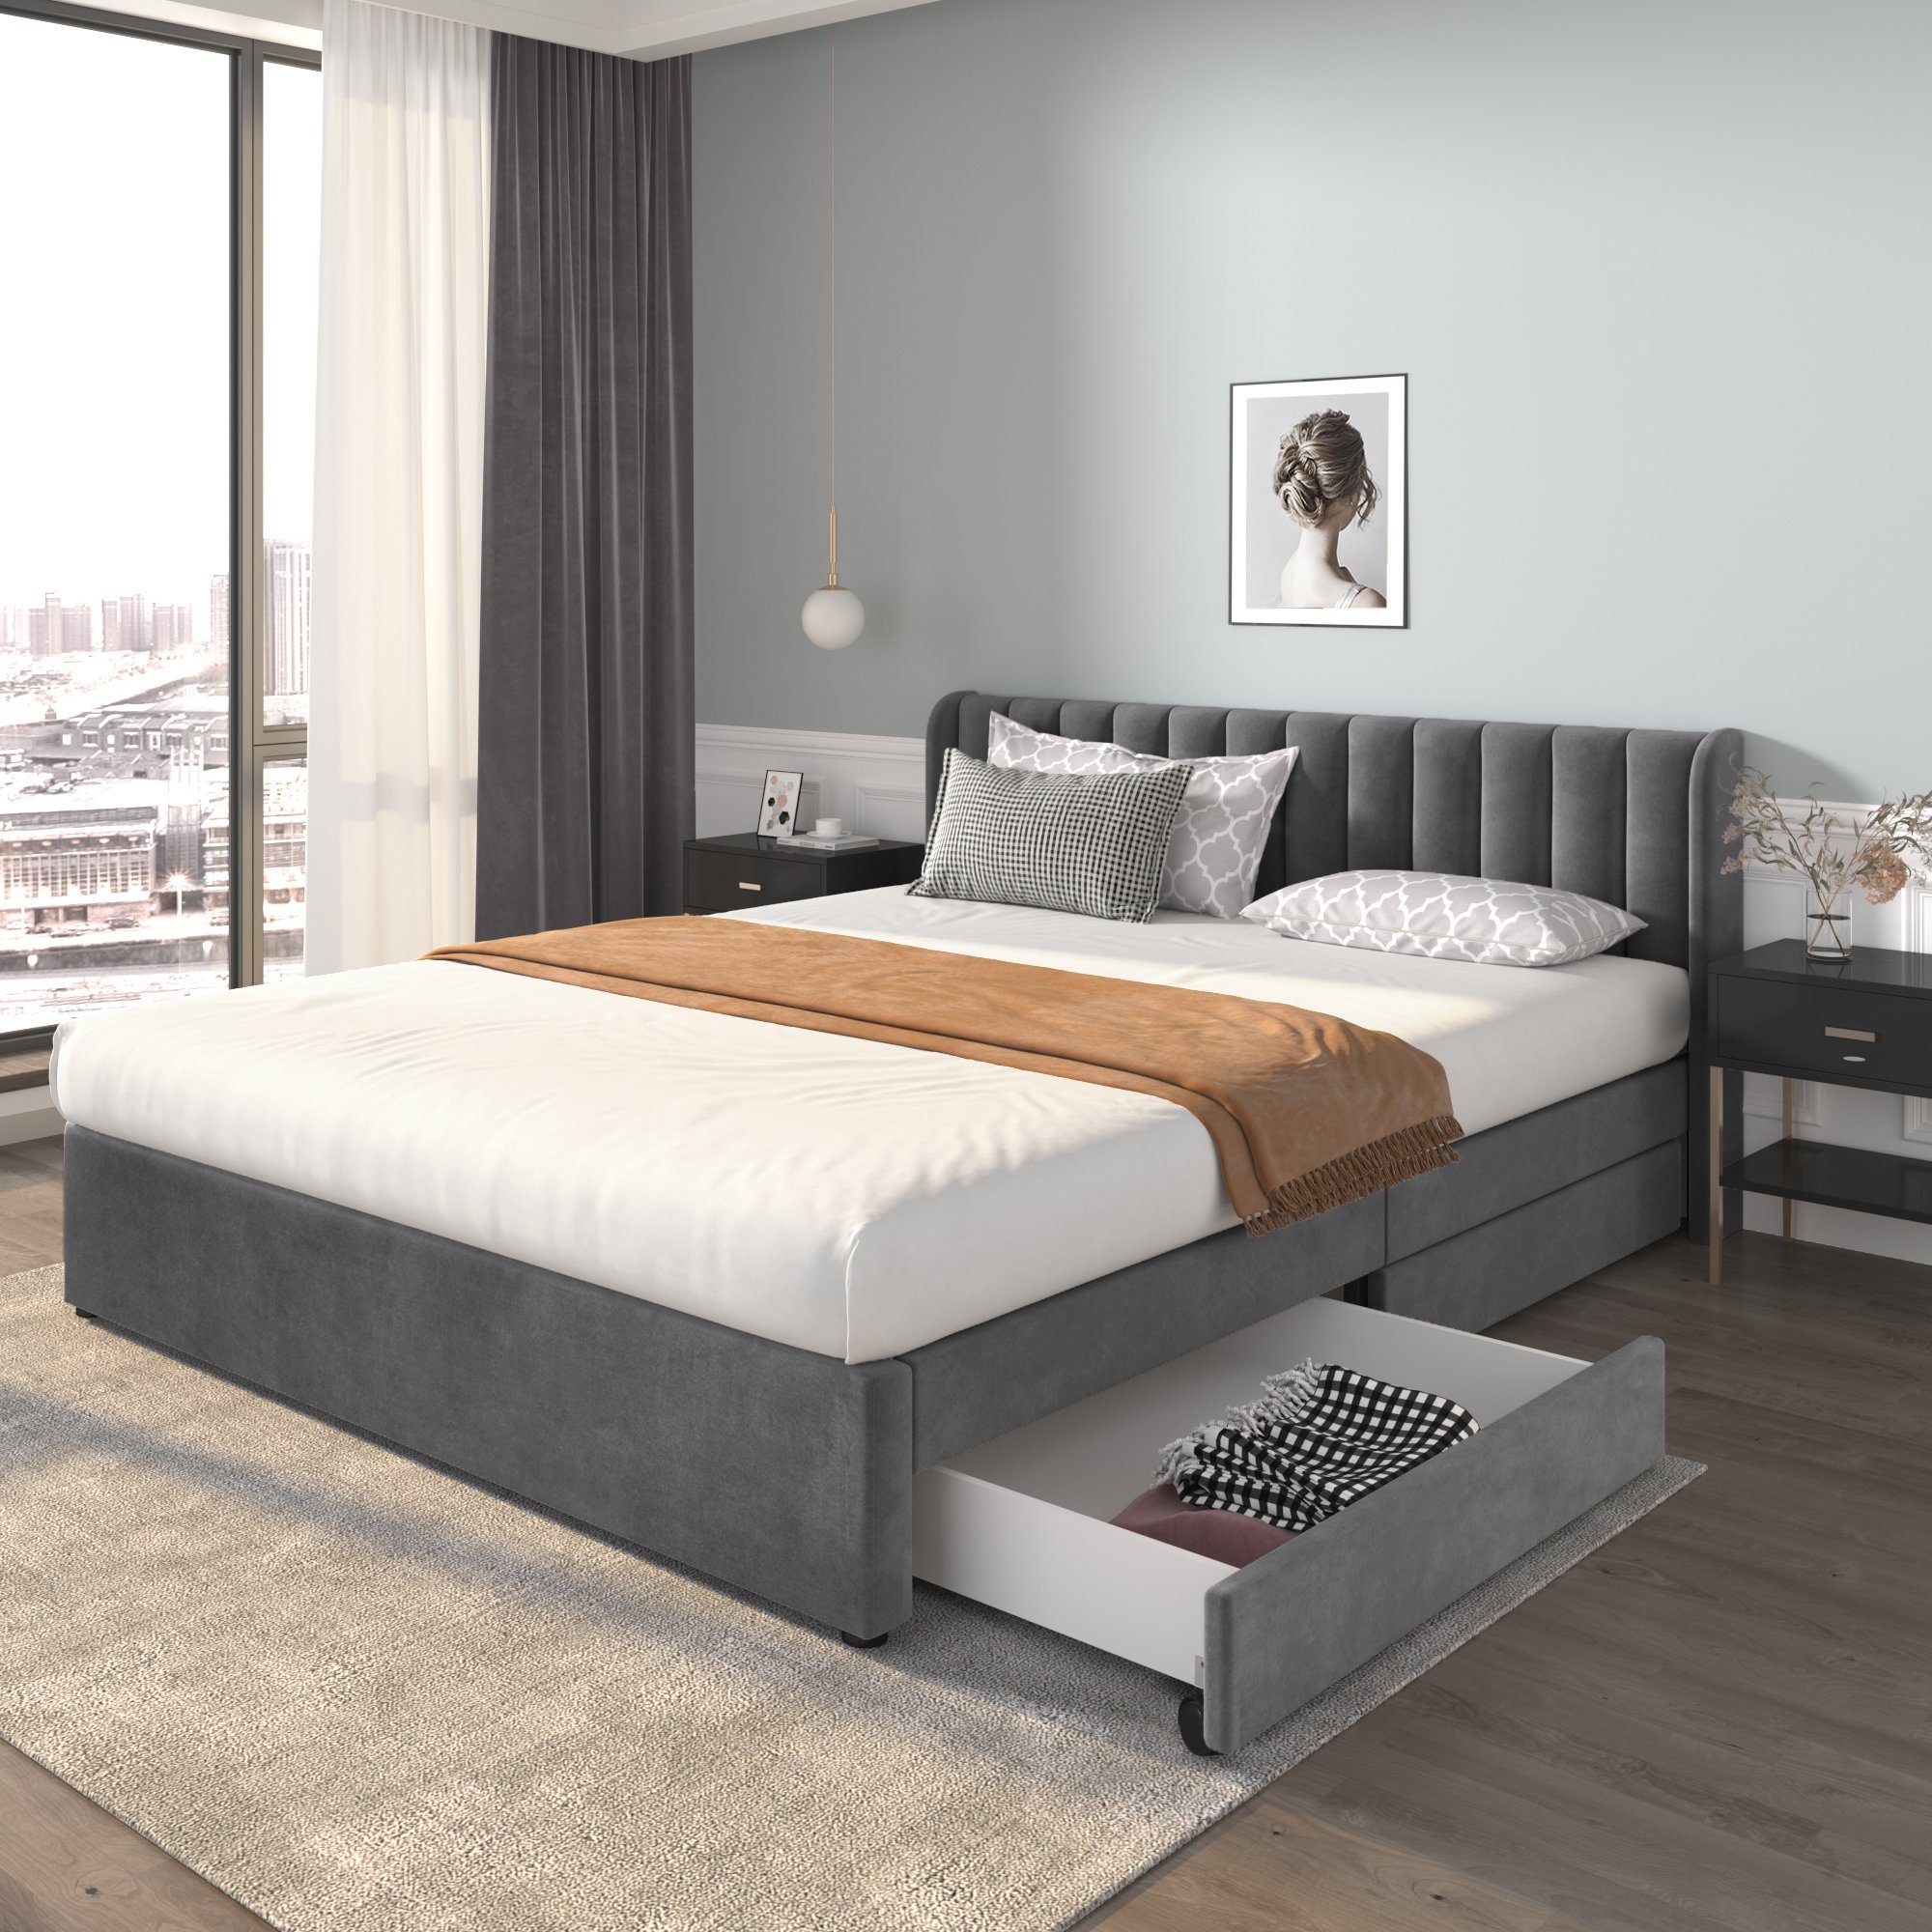 REDOM Polsterbett Doppelbett Stauraumbett Bett mit Lattenrost ohne Matratze (180 x 200 cm), Schlichter und stilvoller Samt-Look